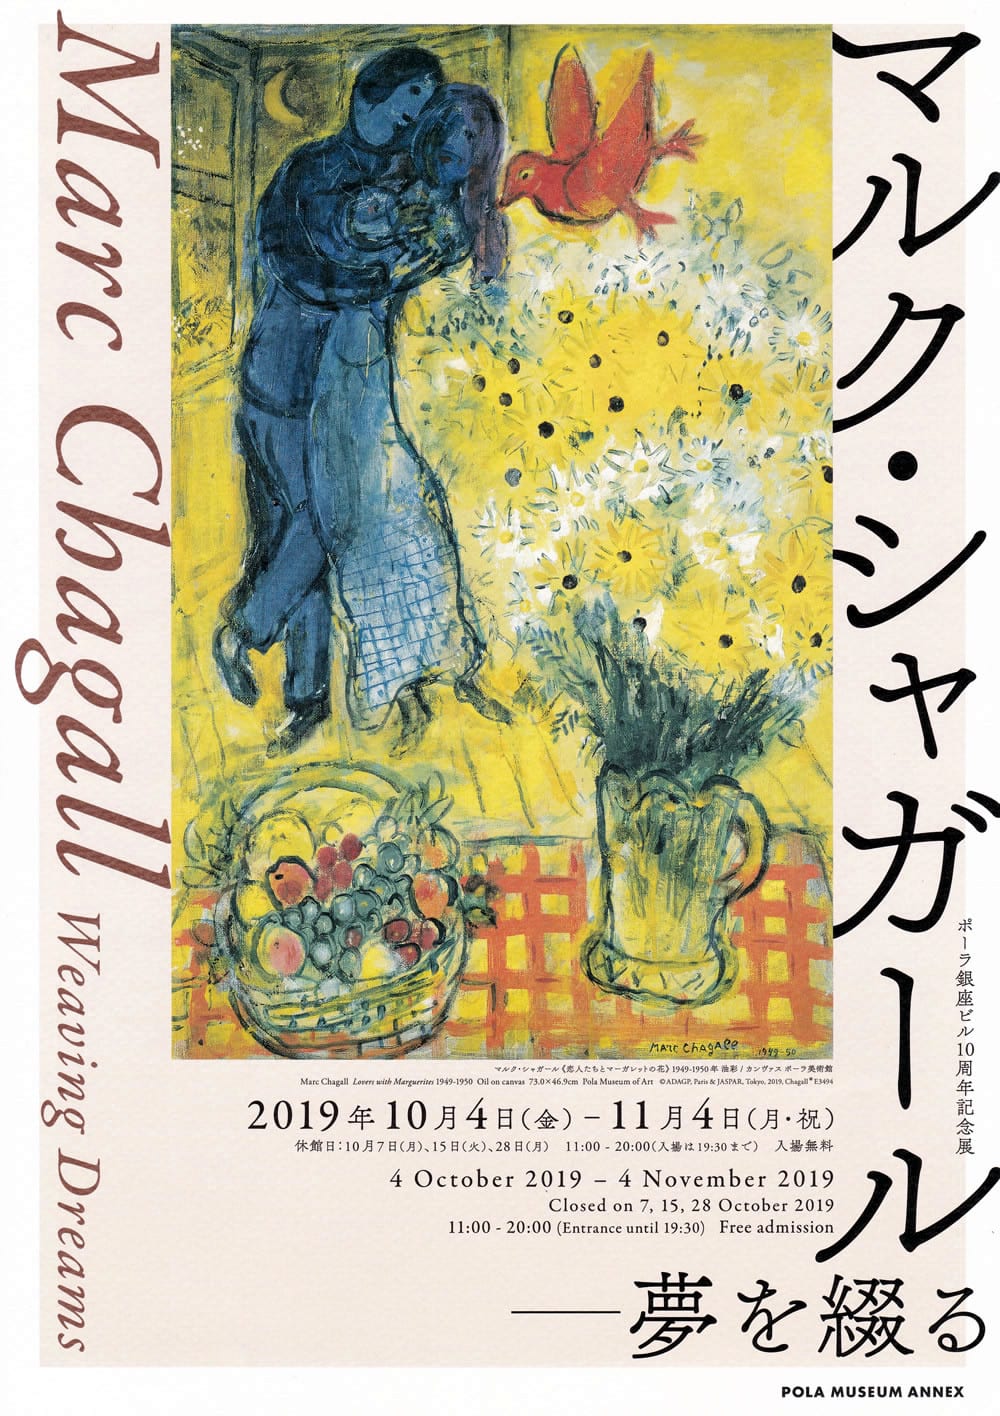 Pola Museum Annex 銀座 マルク シャガール 夢を綴る 19年10月4日 金 11月4日 月 祝 東京23区のごみ問題を考える